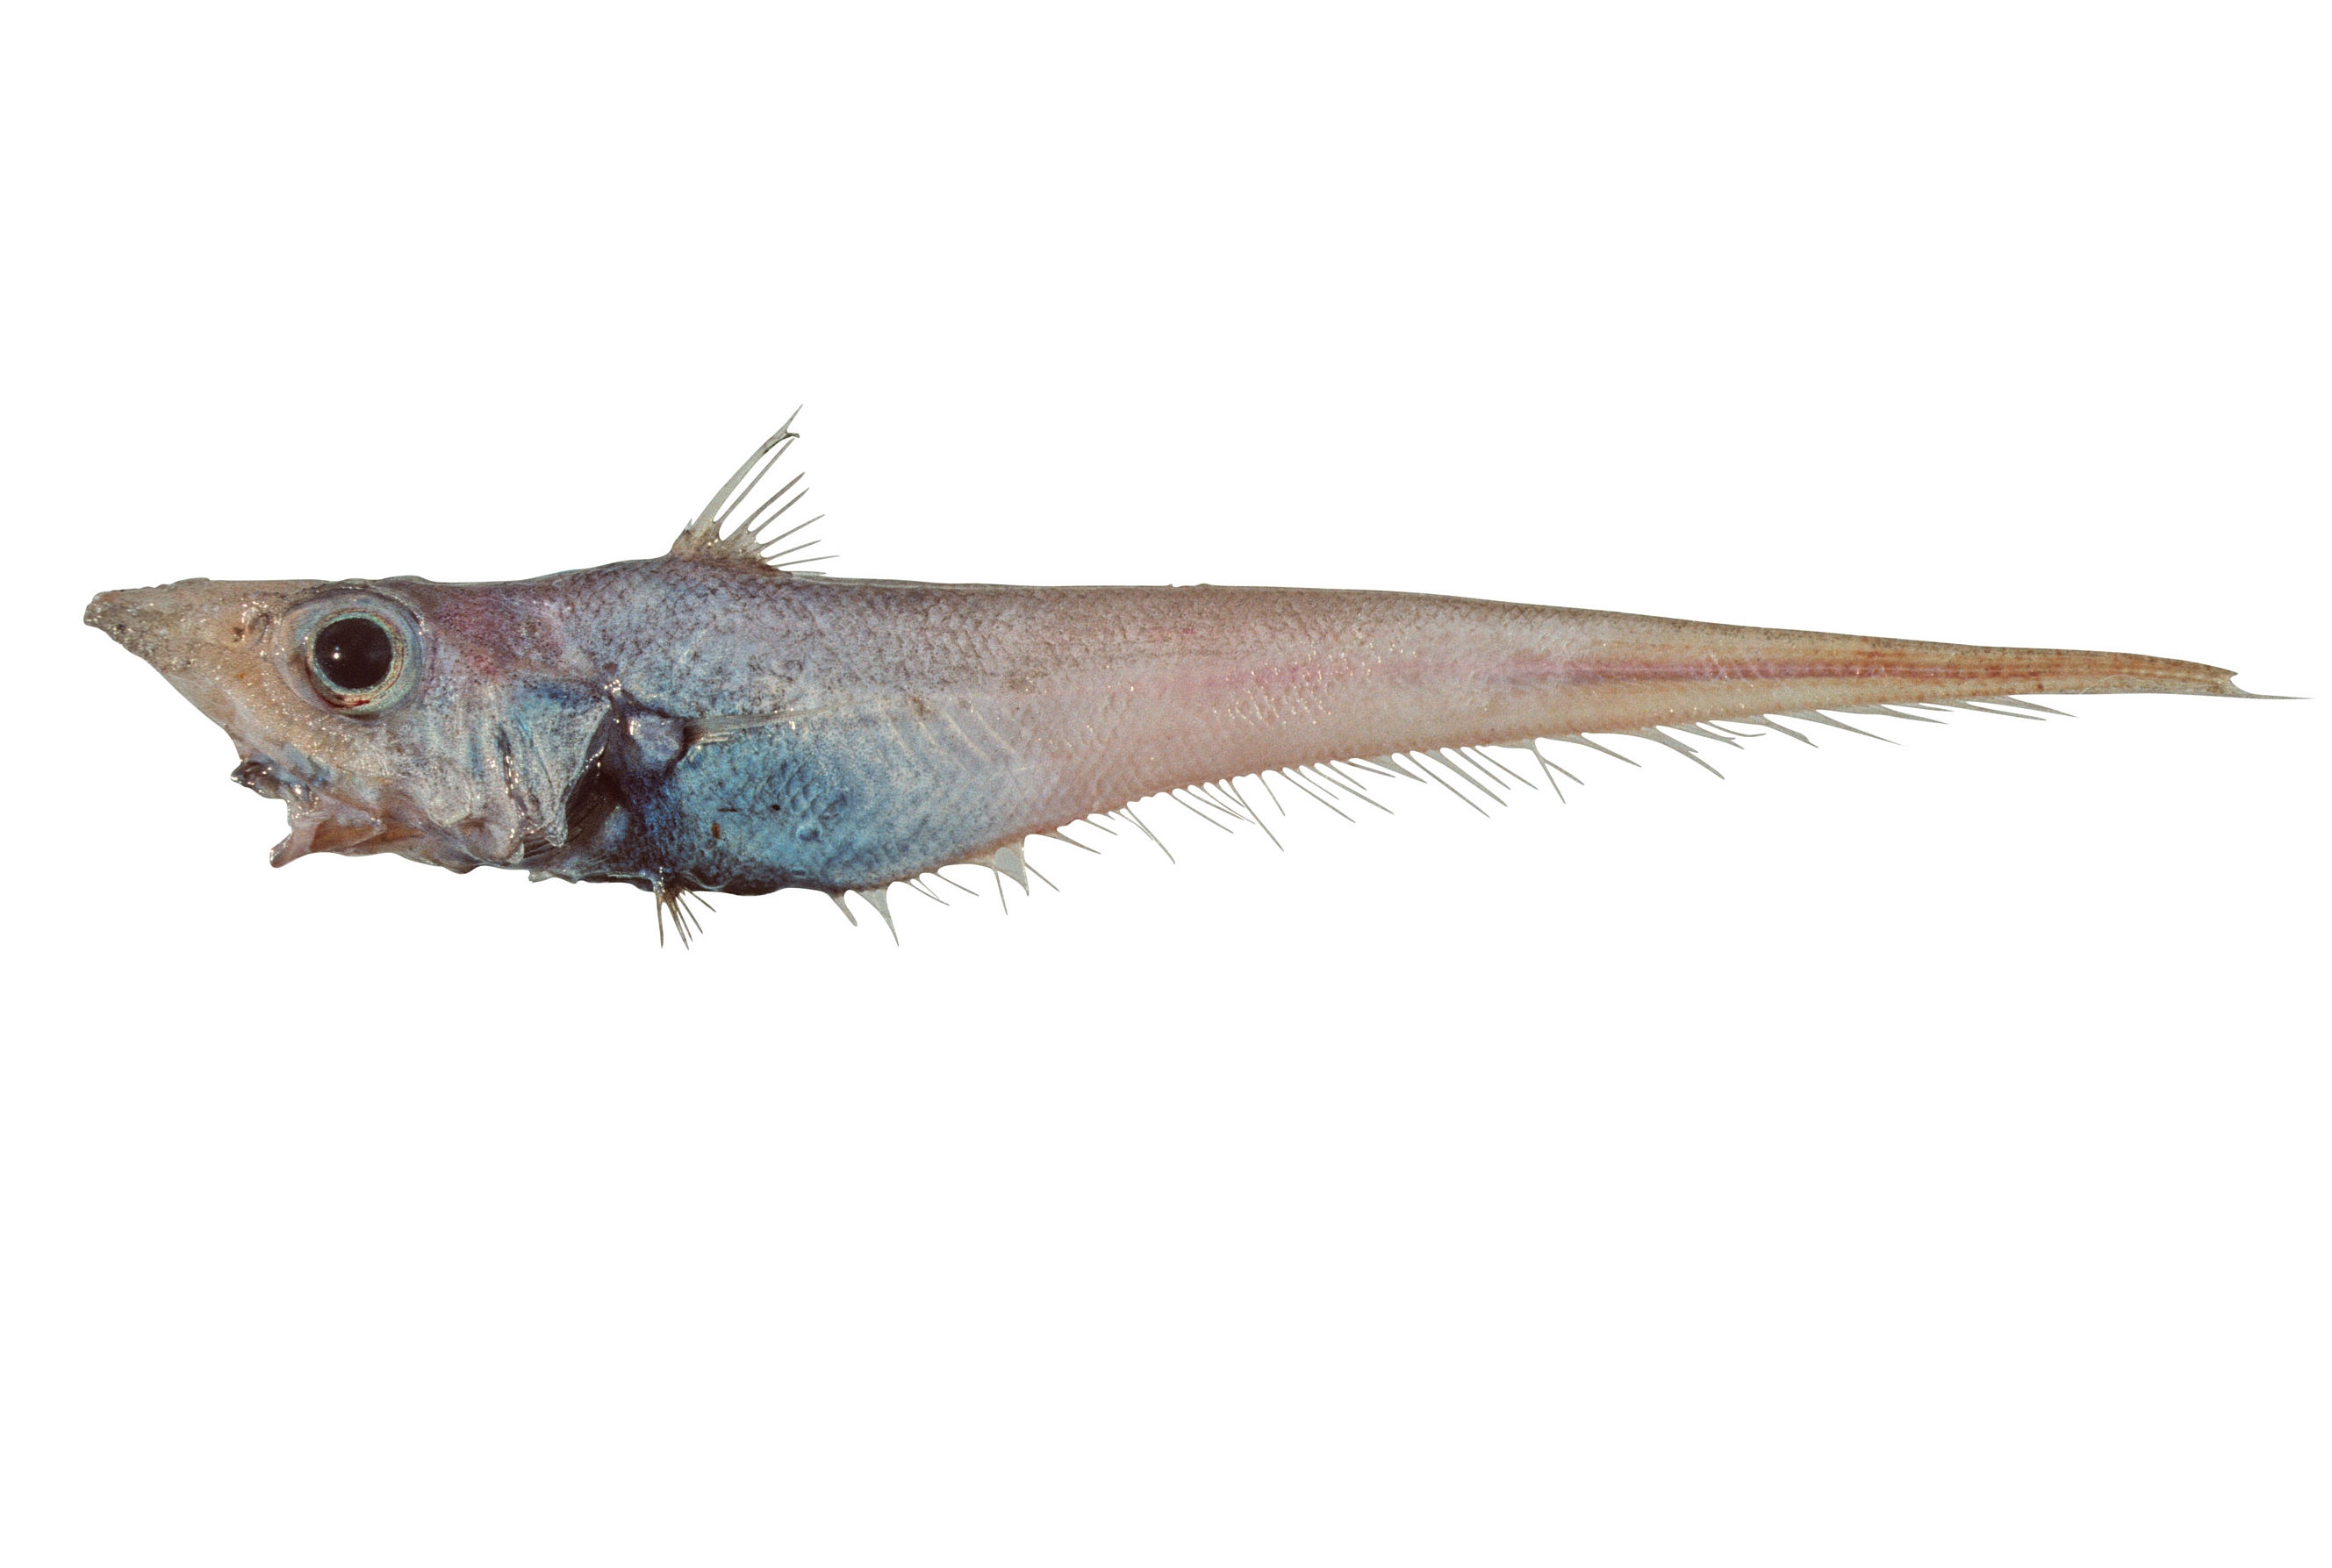 Common name: Sturgeon Whiptail. Scientific name: Mataeocephalus. acipenserinus. Family: Macrouridae.